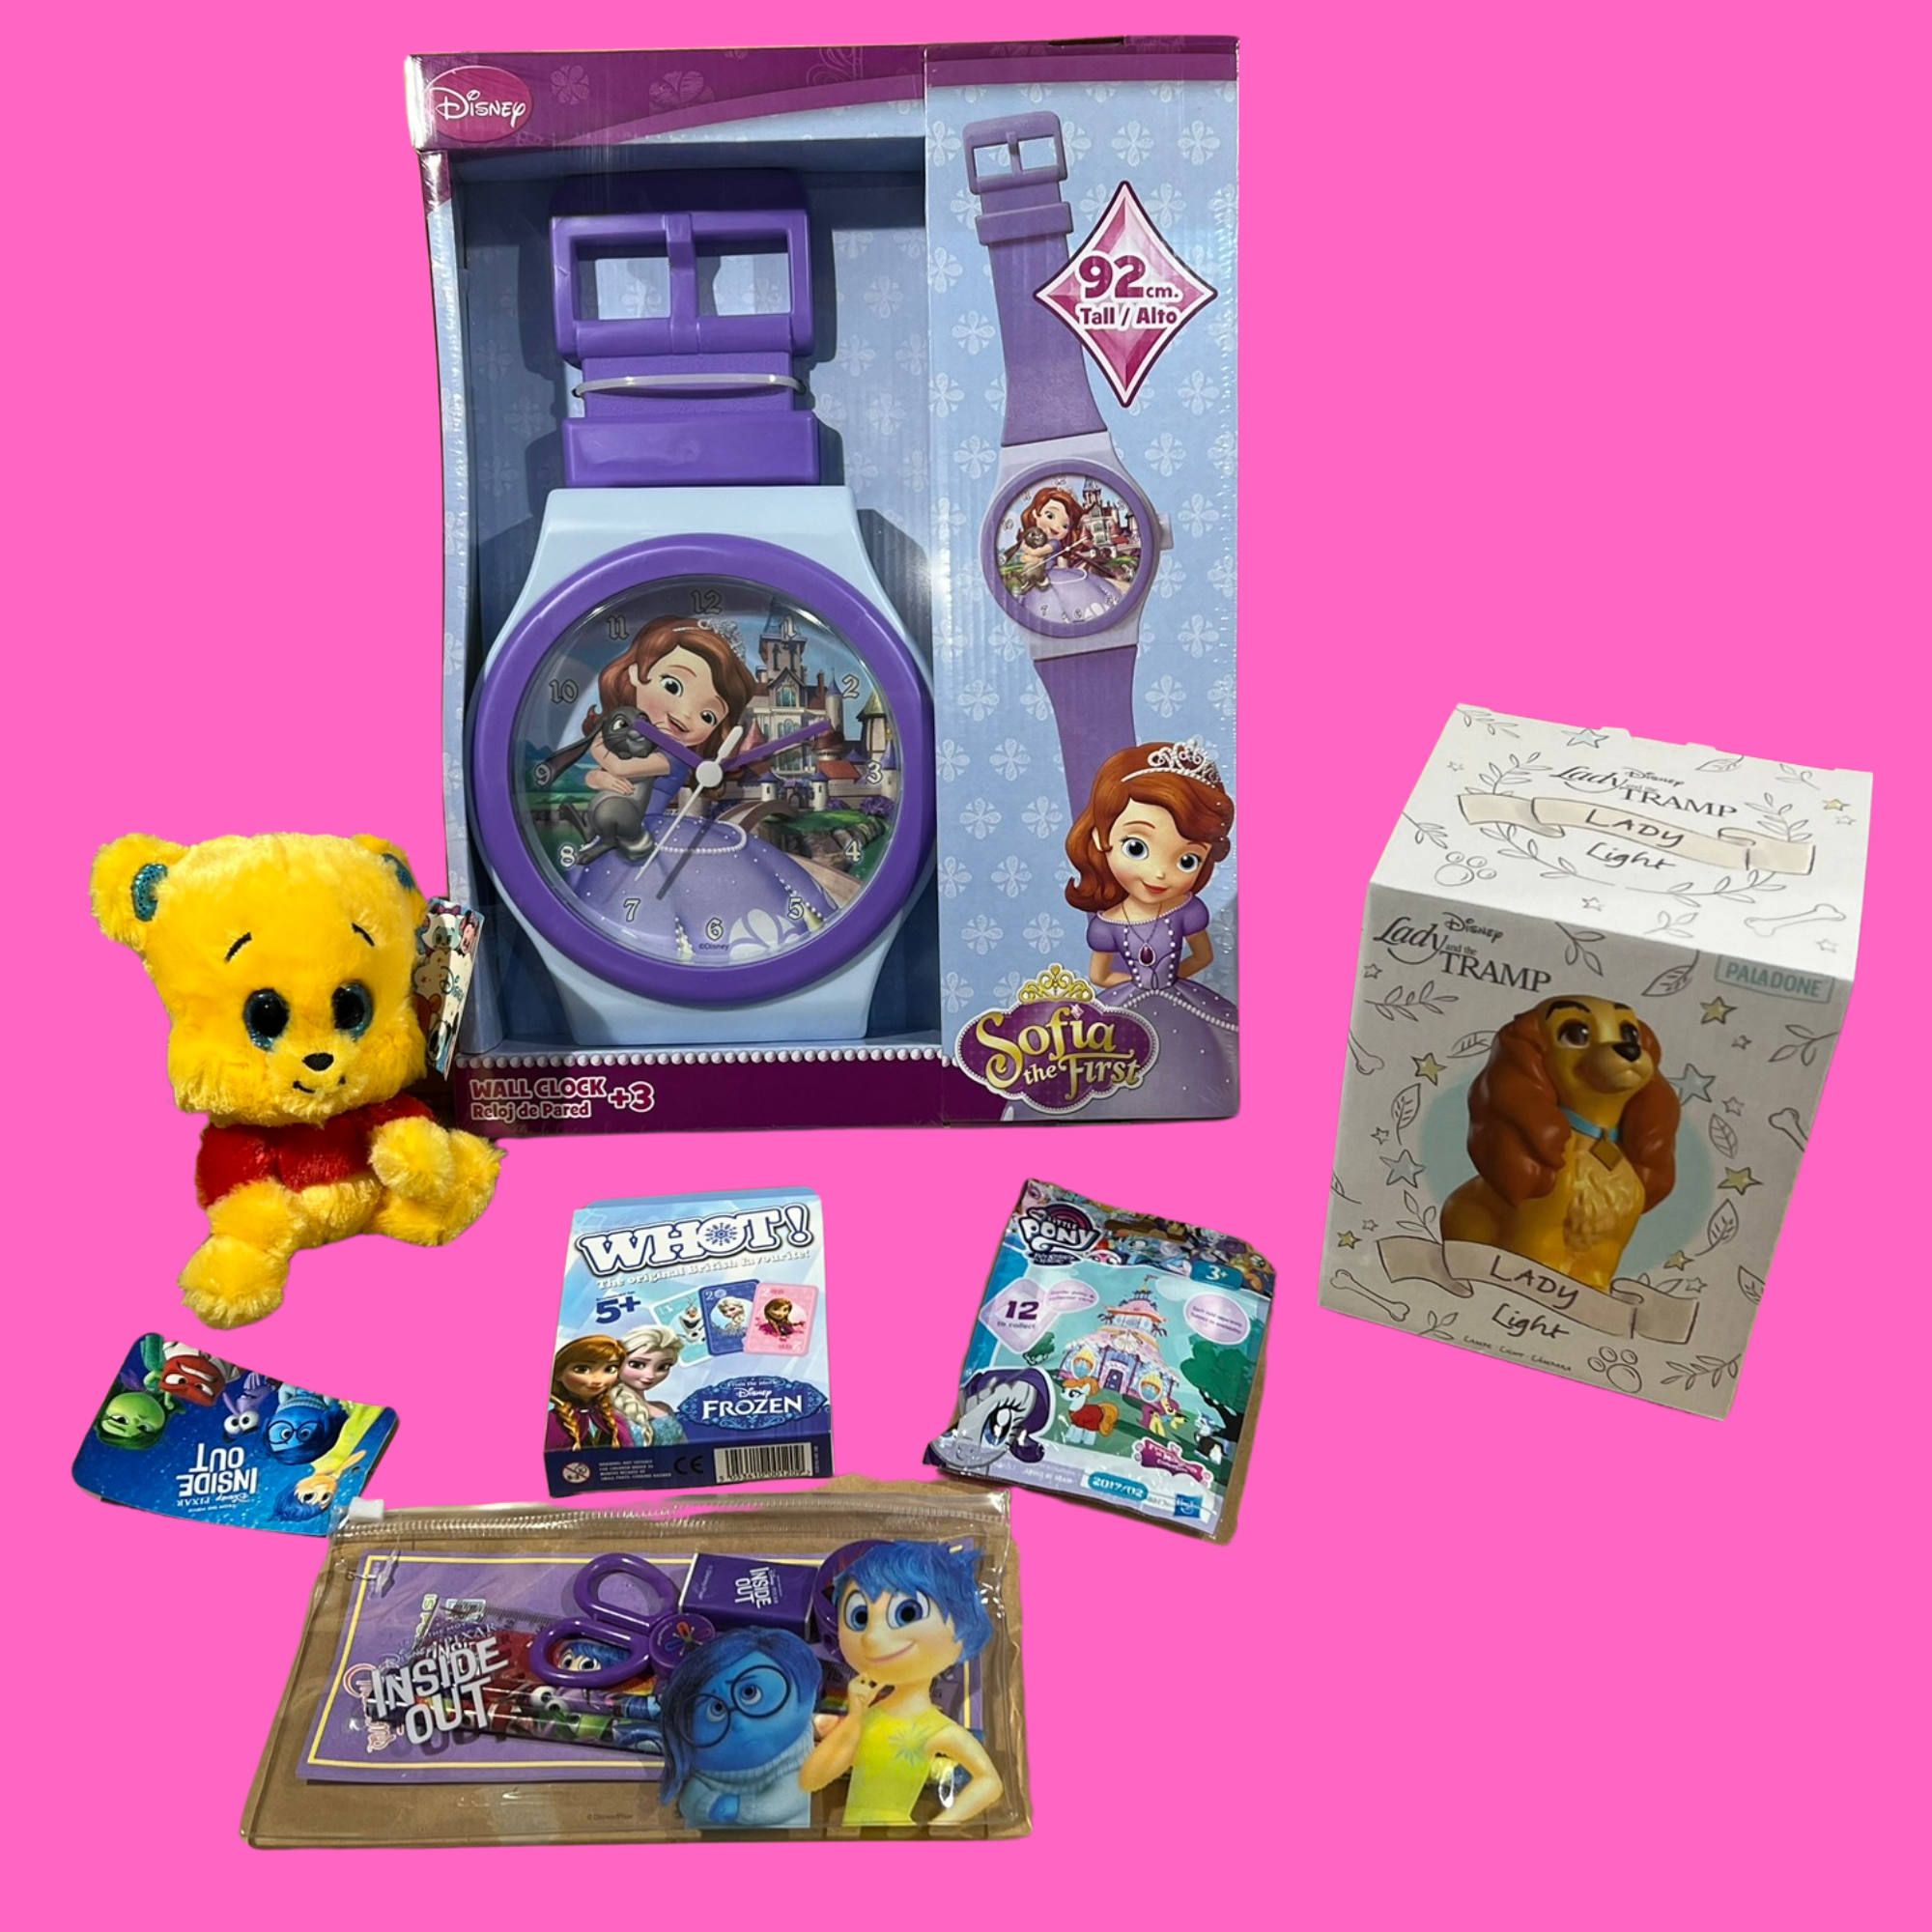 Toptoys2u Mystery Bargain Bundle Box - Boys or Girls Toys 4-8 Yrs - Includes 6 Toys - Toptoys2u